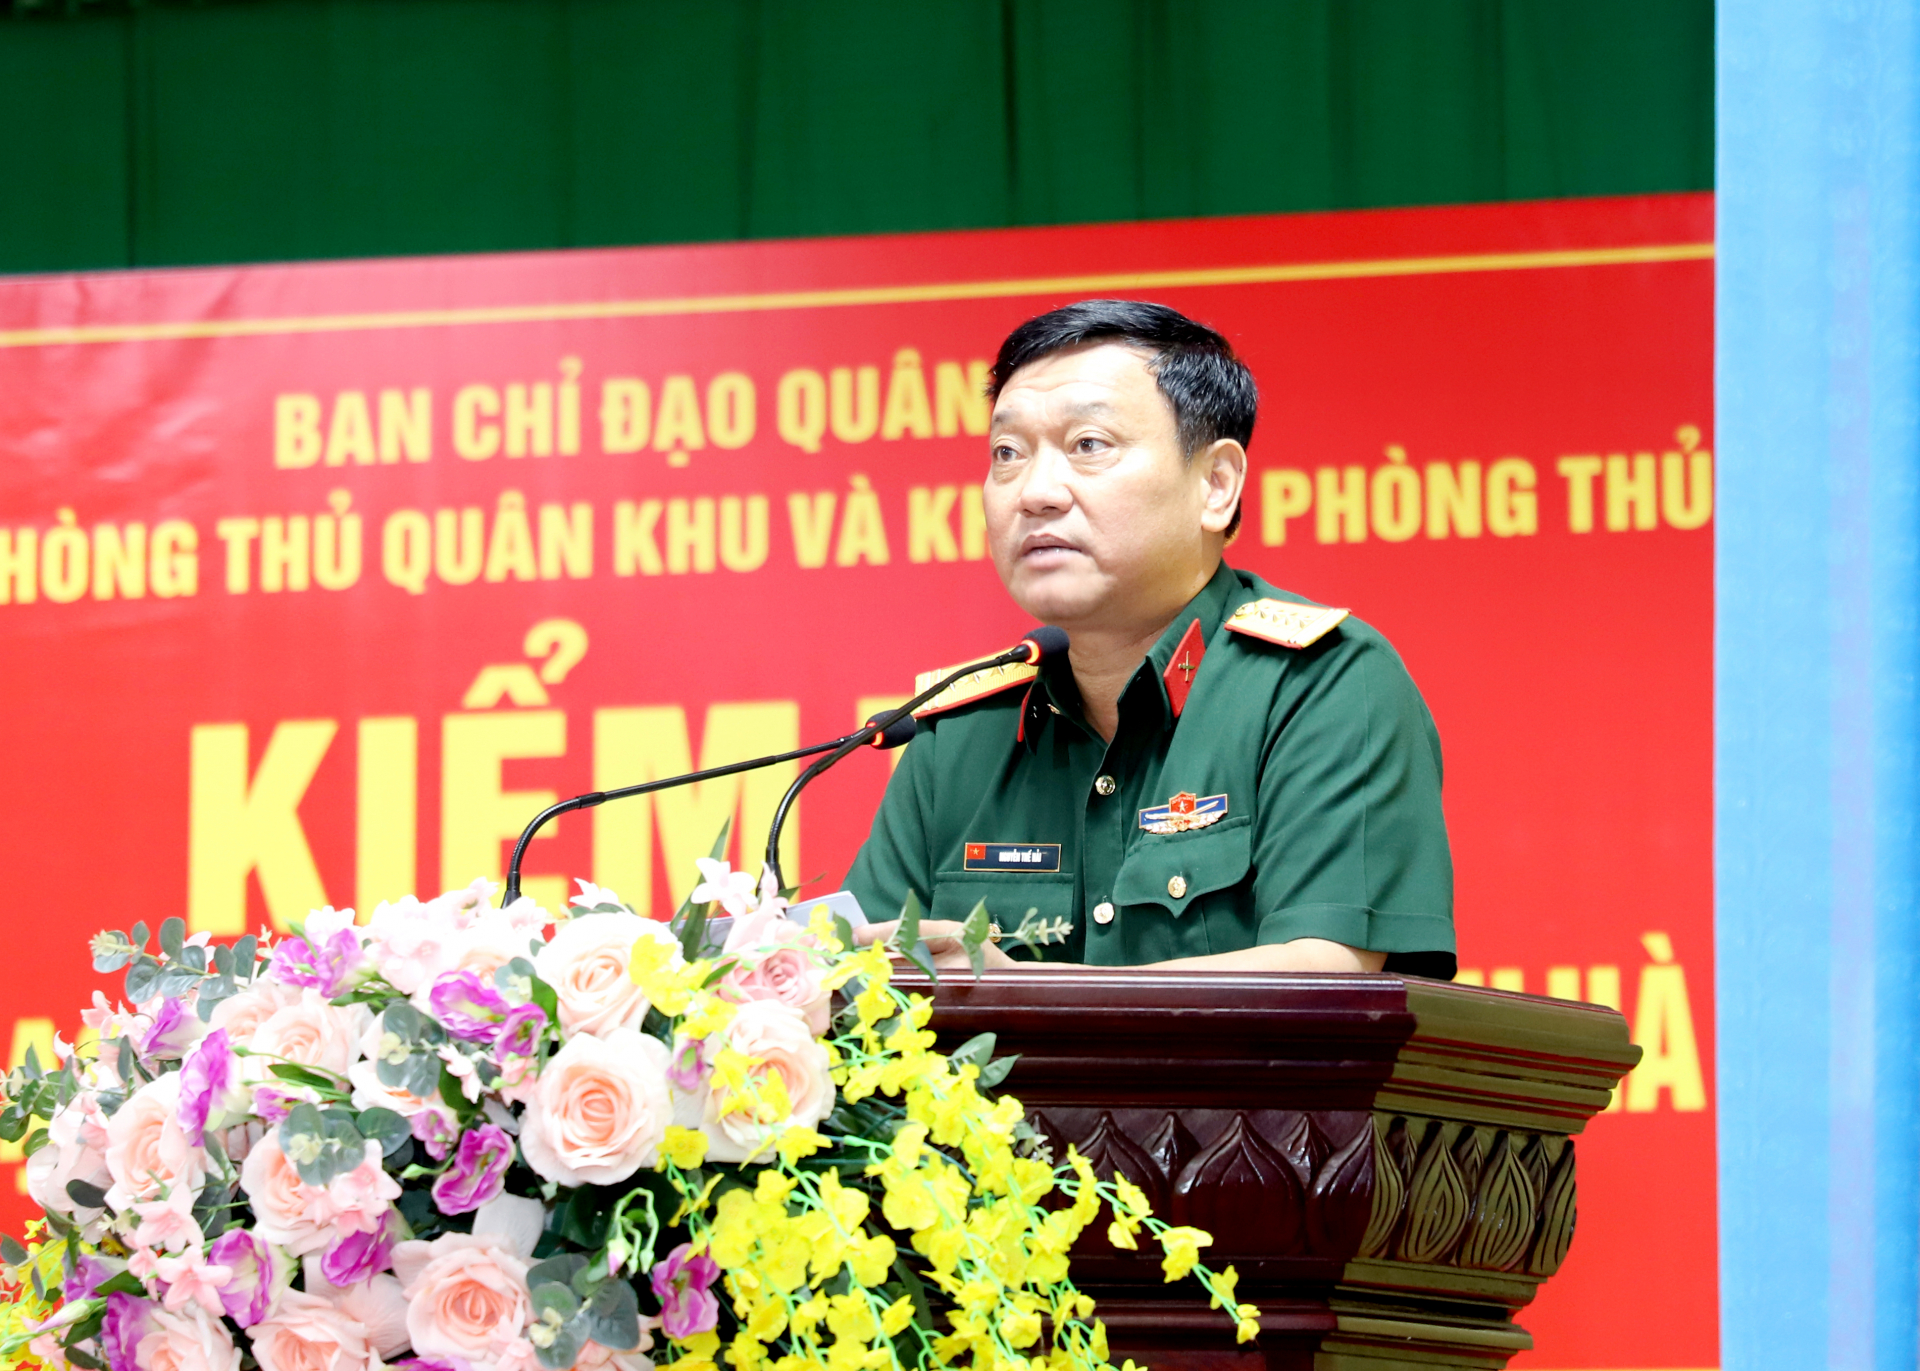 Đại tá Nguyễn Thế Hải, Phó Tham mưu trưởng Quân khu 2 phổ biến, hiệp đồng nội dung kiểm tra.